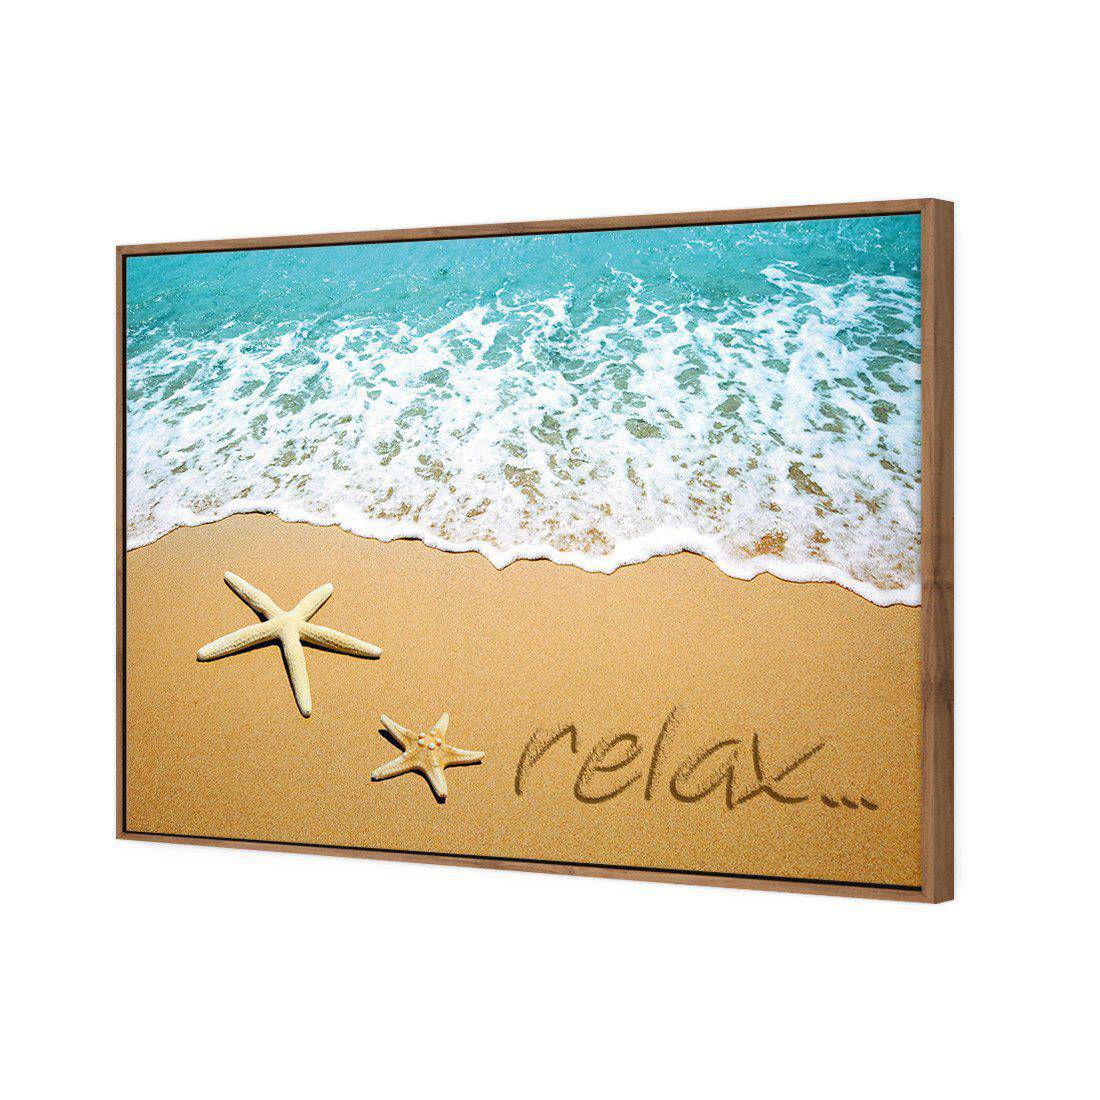 Relax Inspire Canvas Art-Canvas-Wall Art Designs-45x30cm-Canvas - Natural Frame-Wall Art Designs